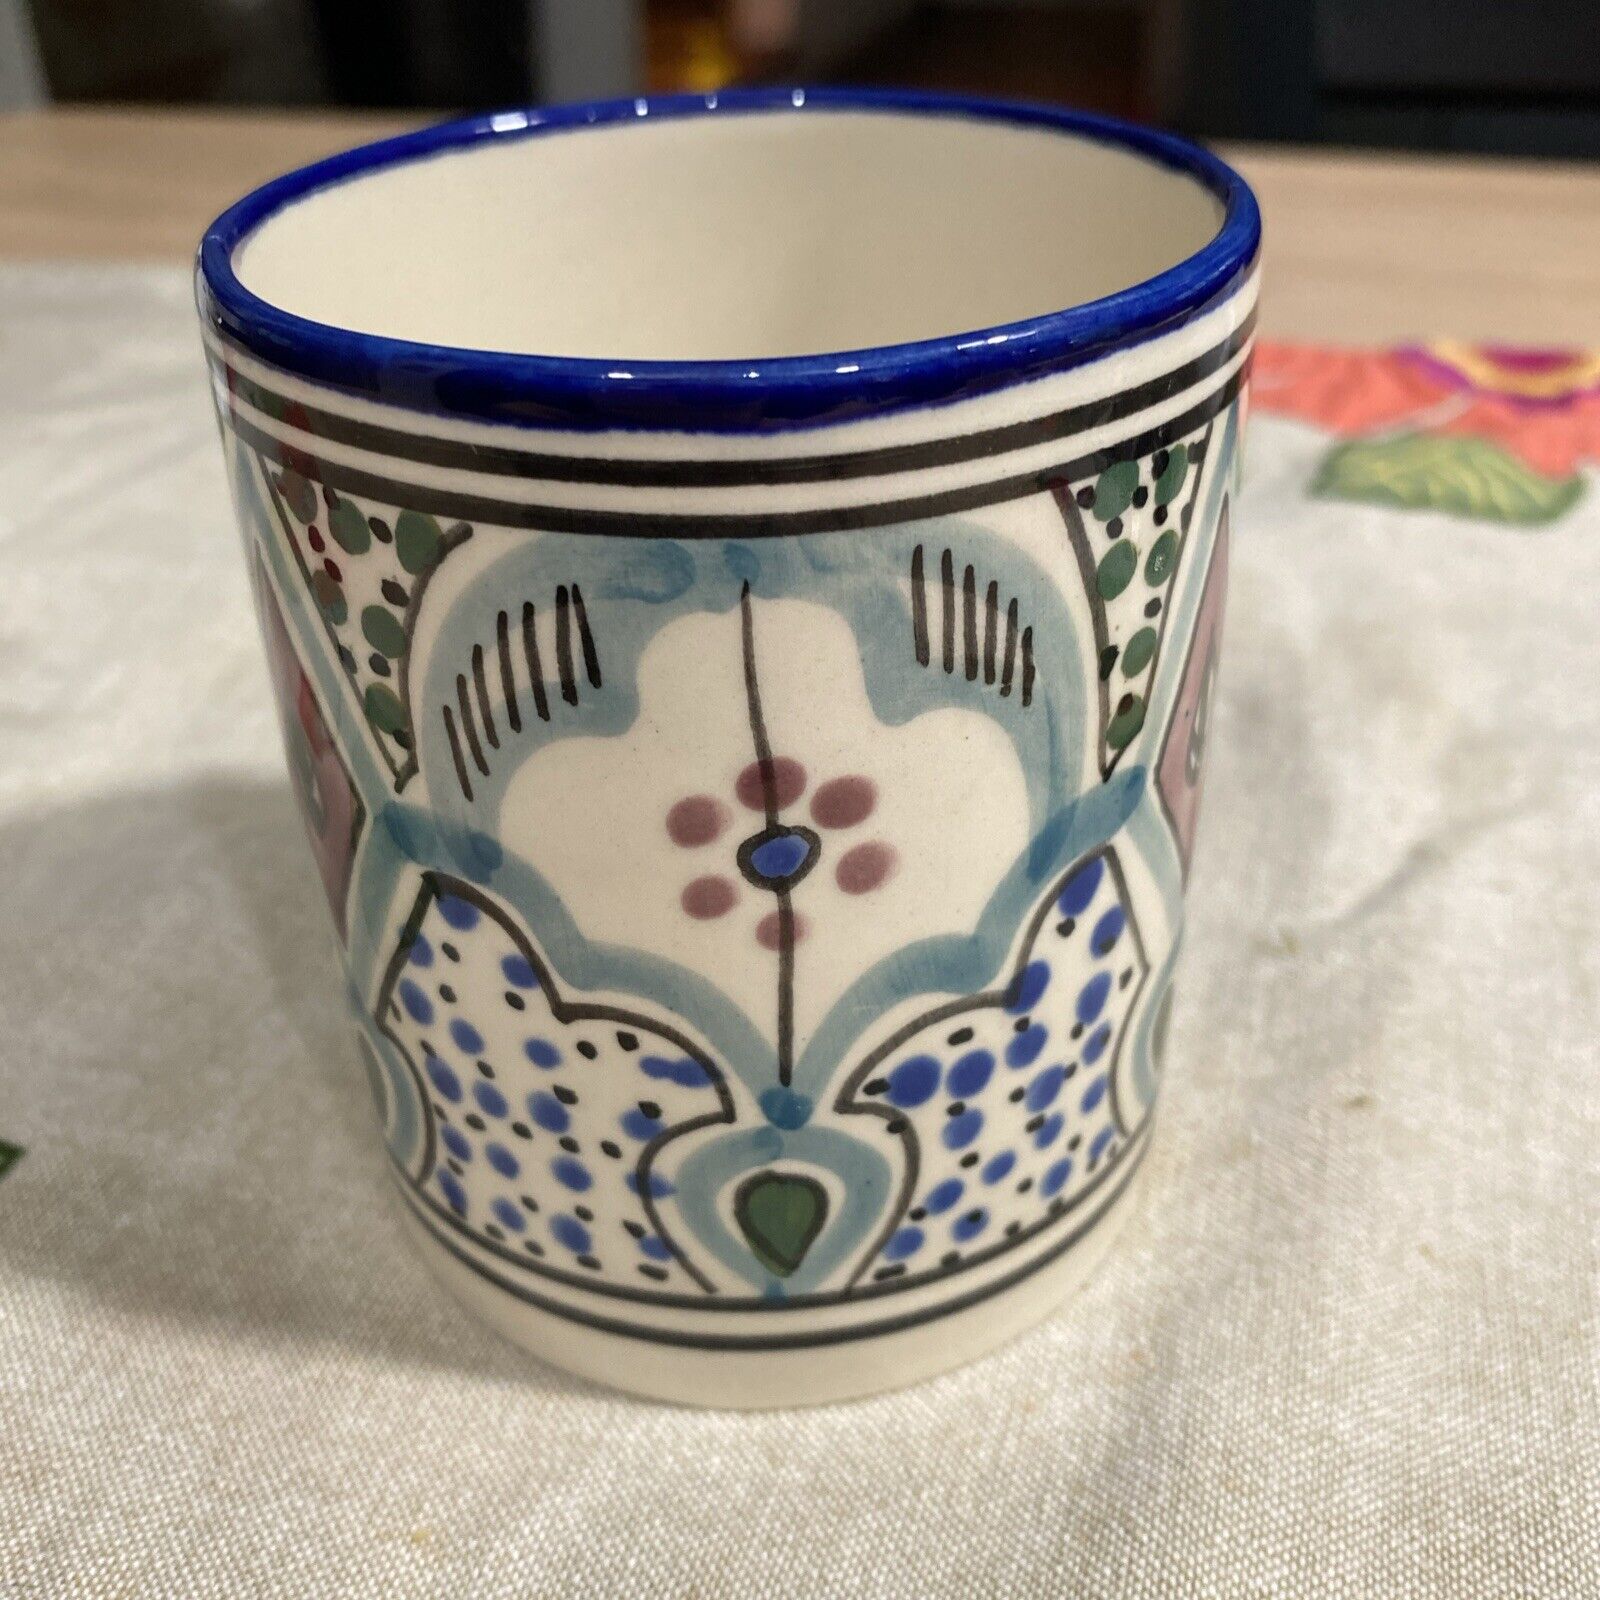 Tunisia Handless Mug Cup Hand Painted Stoneware Ceramic Le Souk Ceramique